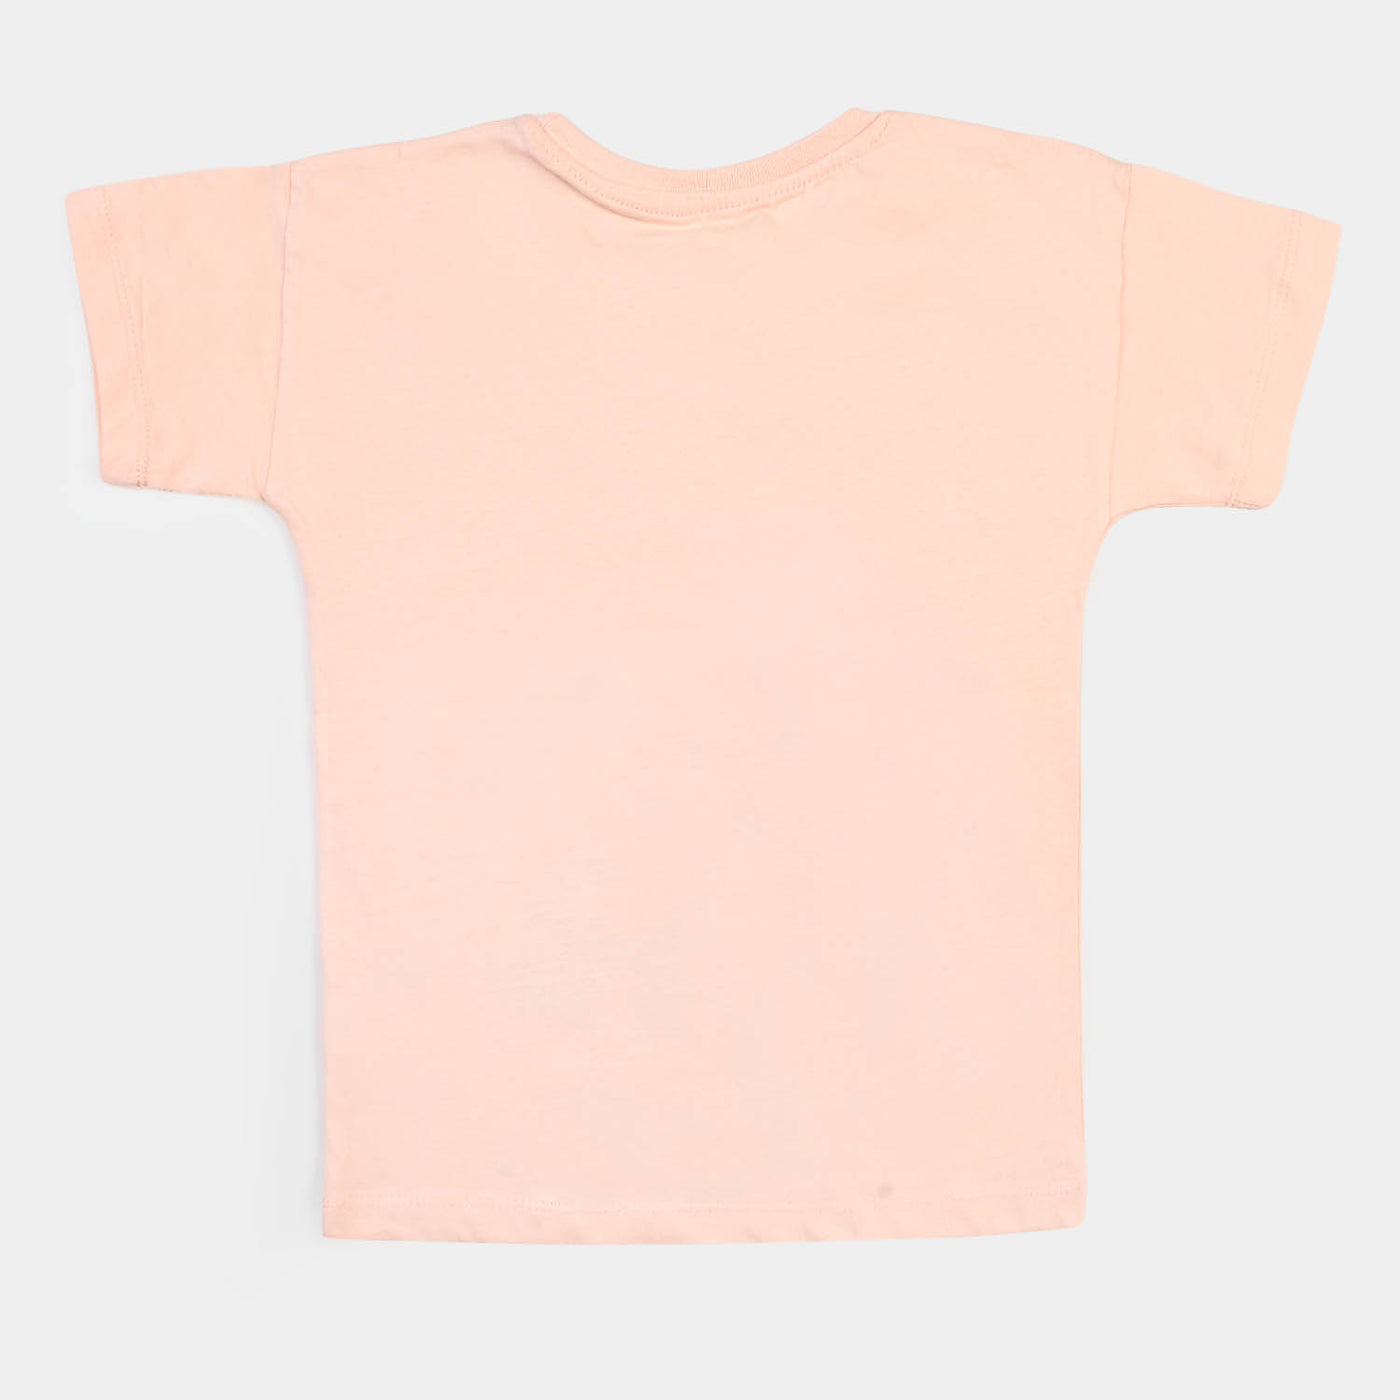 Girls Cotton T-Shirt Character  - Light Peach